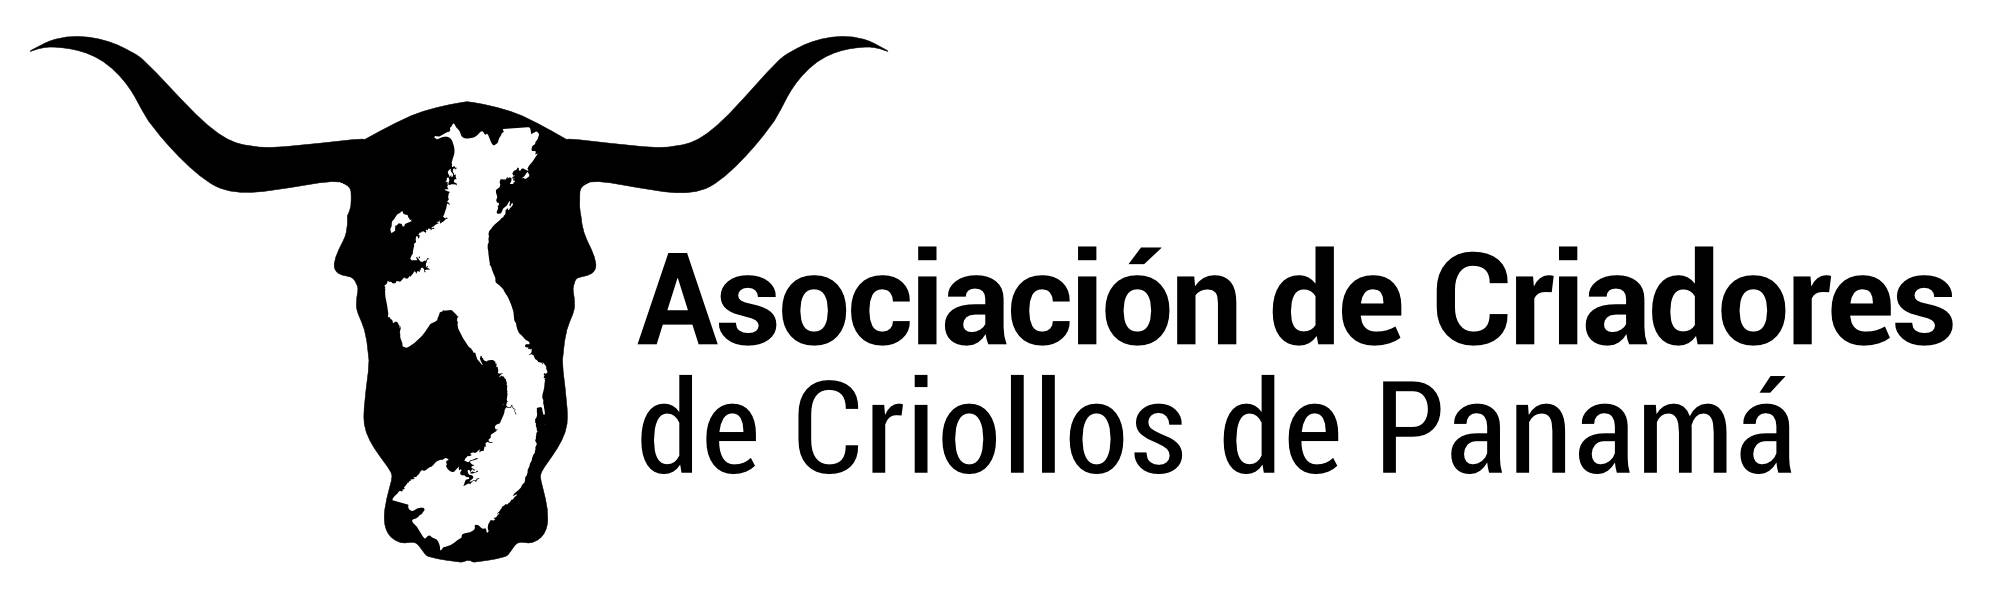 Asociación de Criadores de Criollos de Panamá (ACCRIPA) - Panamá